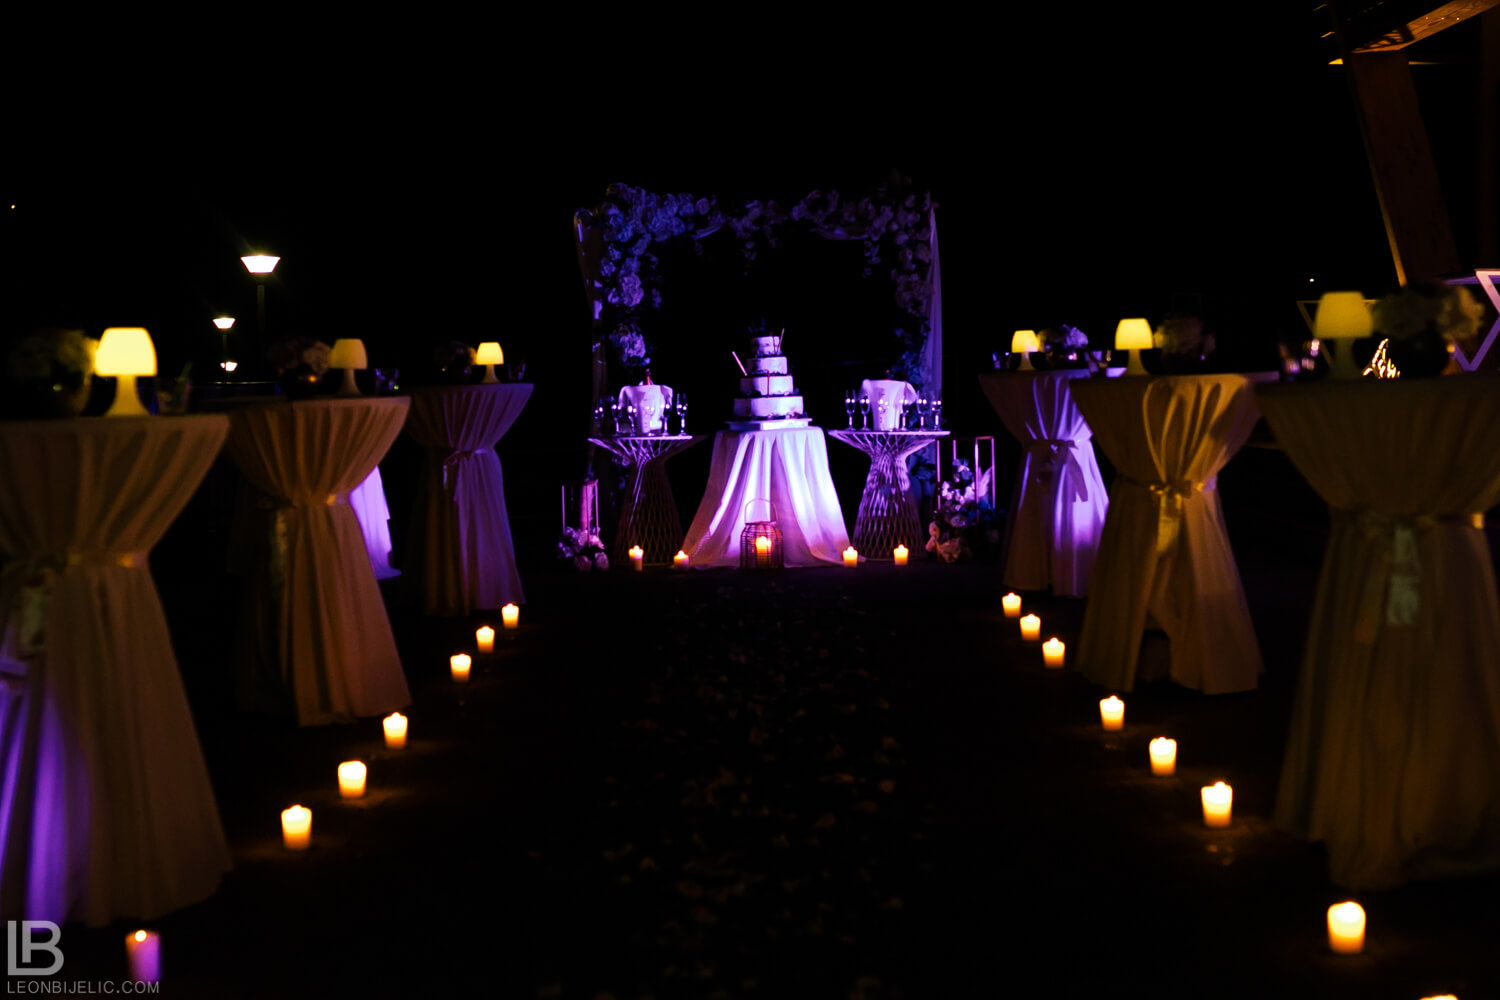 Slike vjenčanja - Banja Luka Stara Ada - Torta - Fotke - Fotografije - Fotograf Leon Bijelić